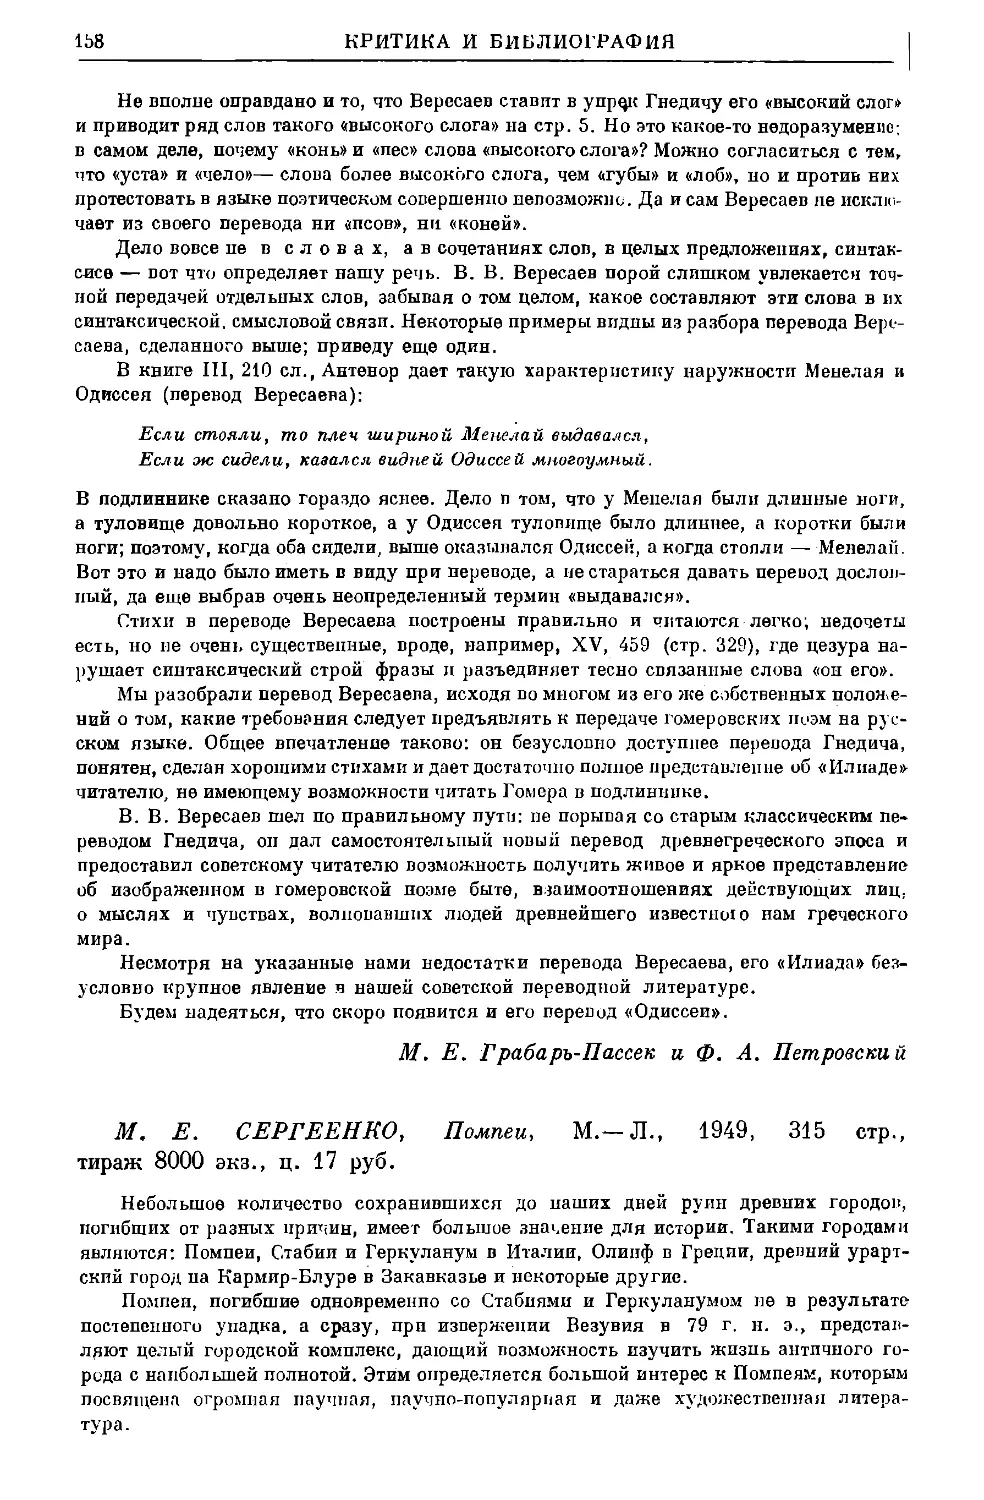 Сорокина Н.П. – М.Е. Сергеенко. Помпеи. М.–Л., 1949